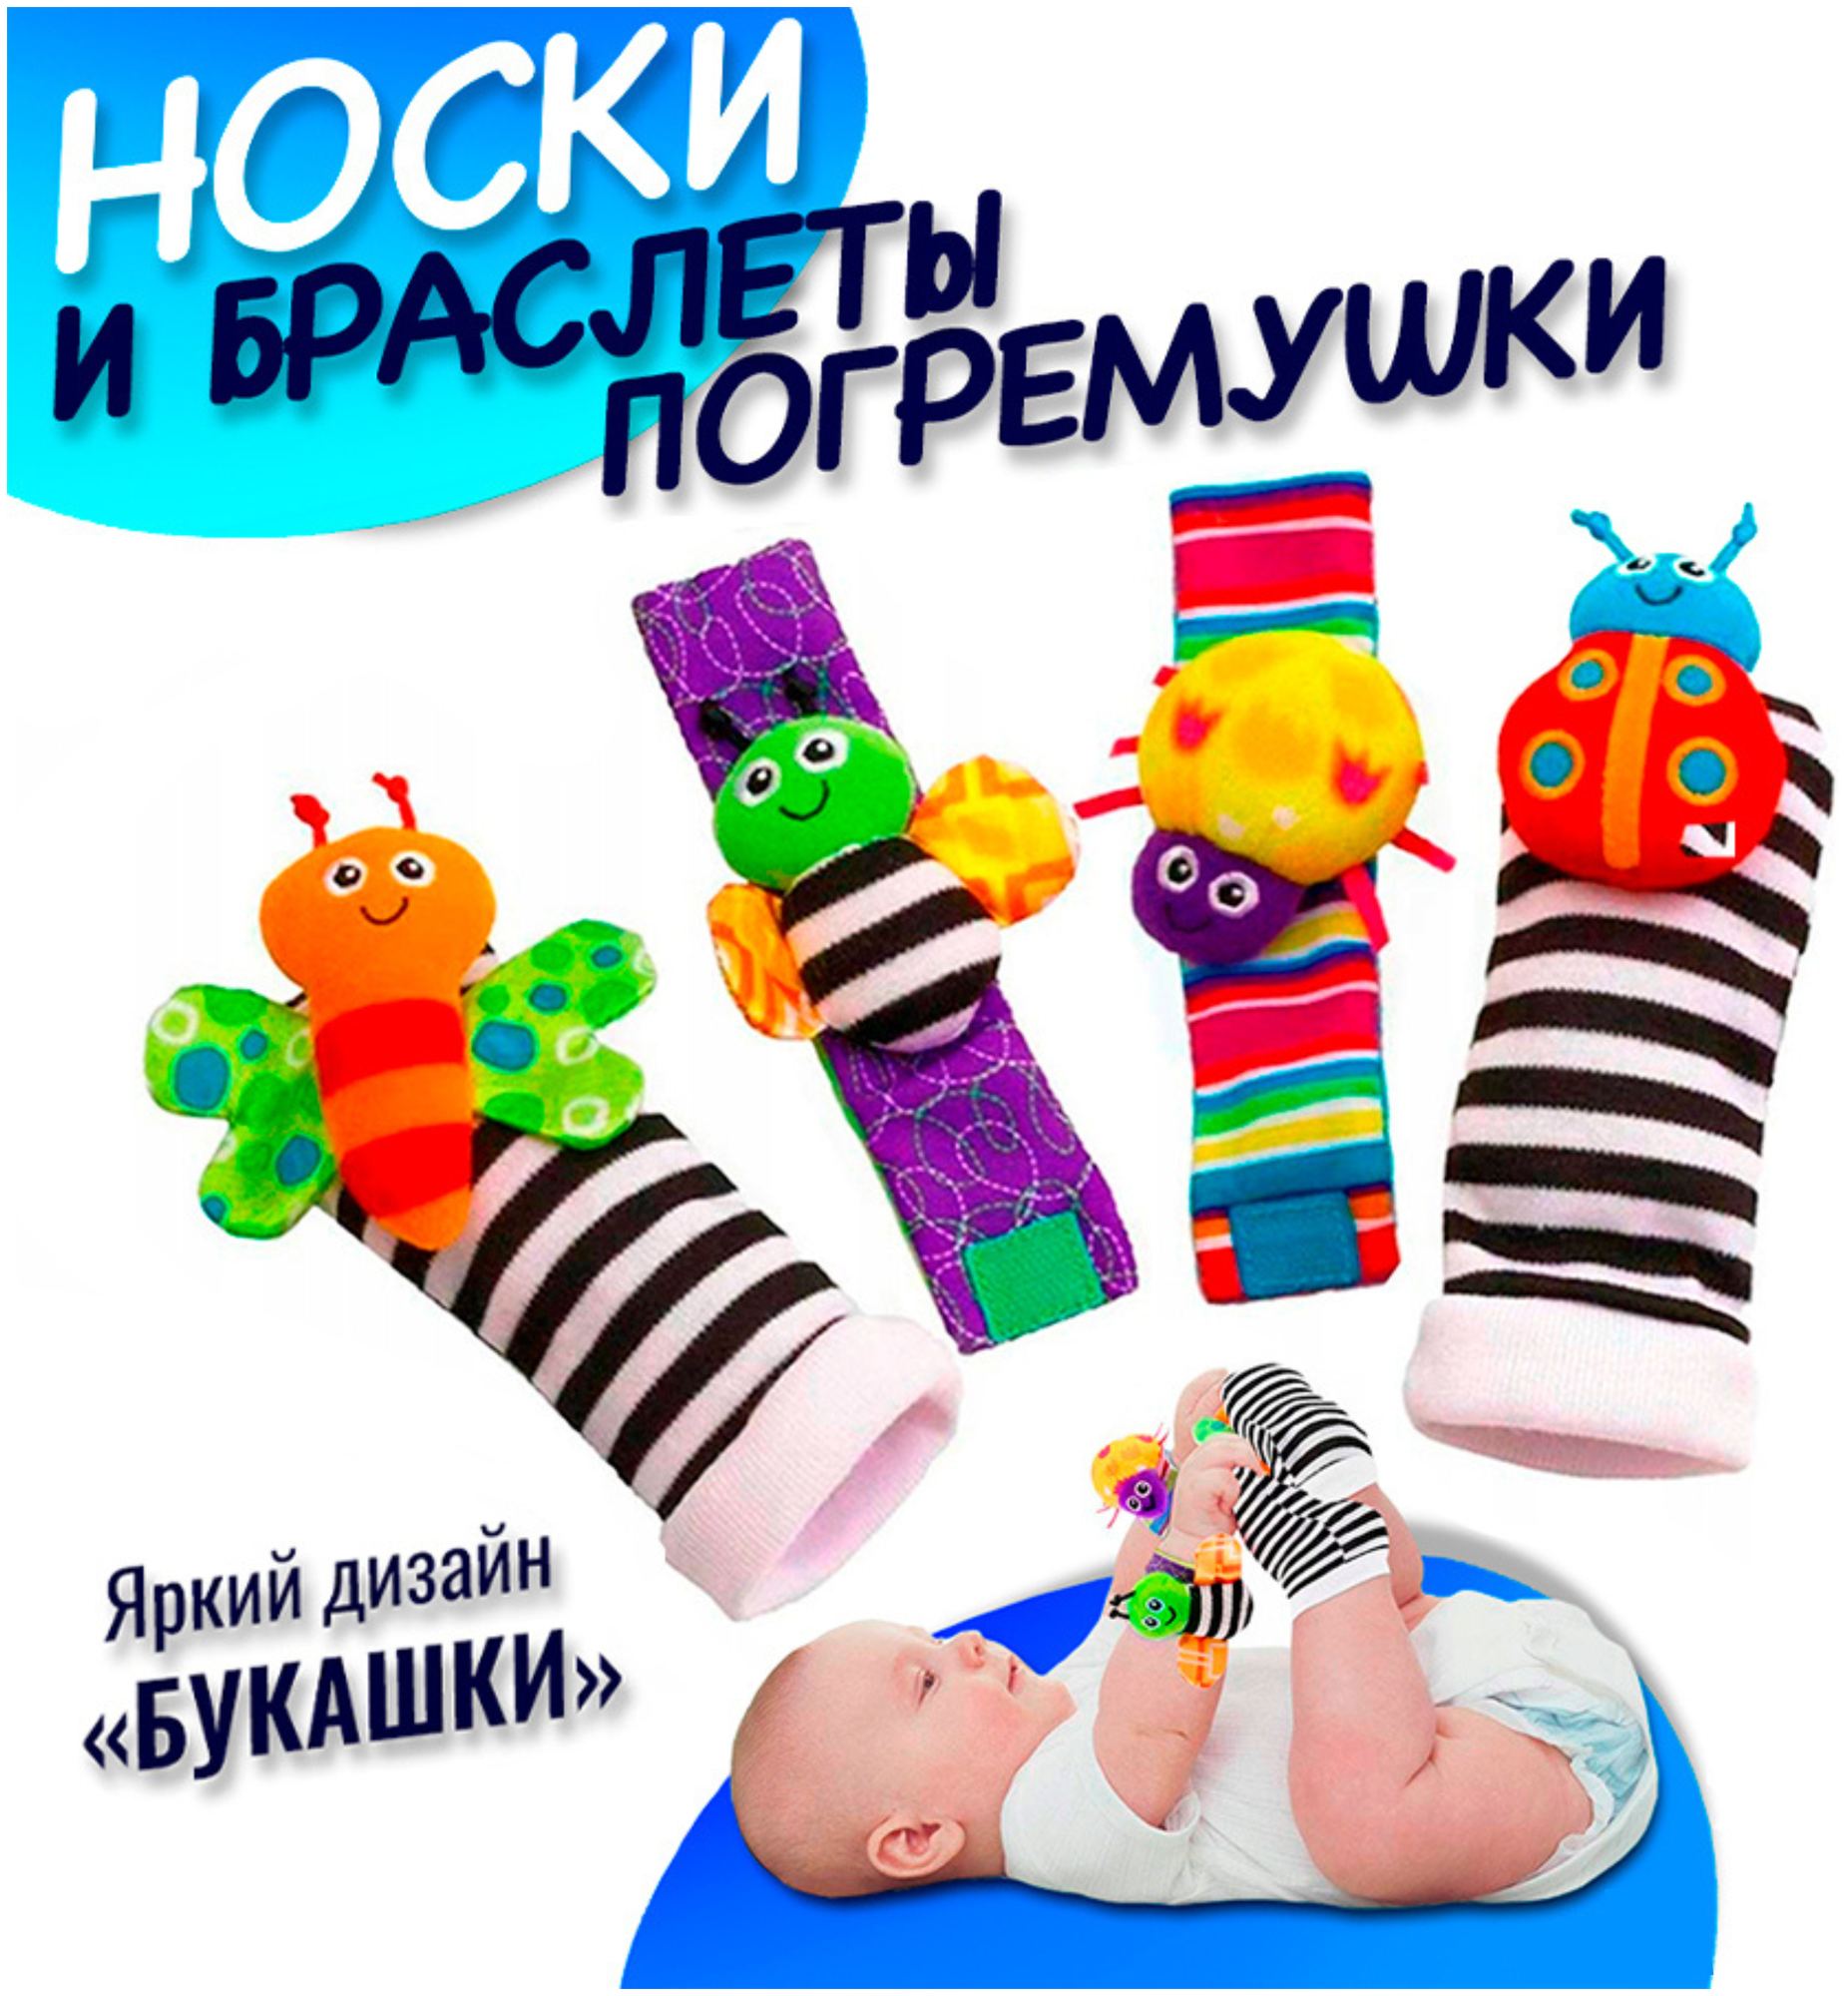 Детские носки-погремушки в комплекте с браслетами набор развивающих игрушек 4 предмета